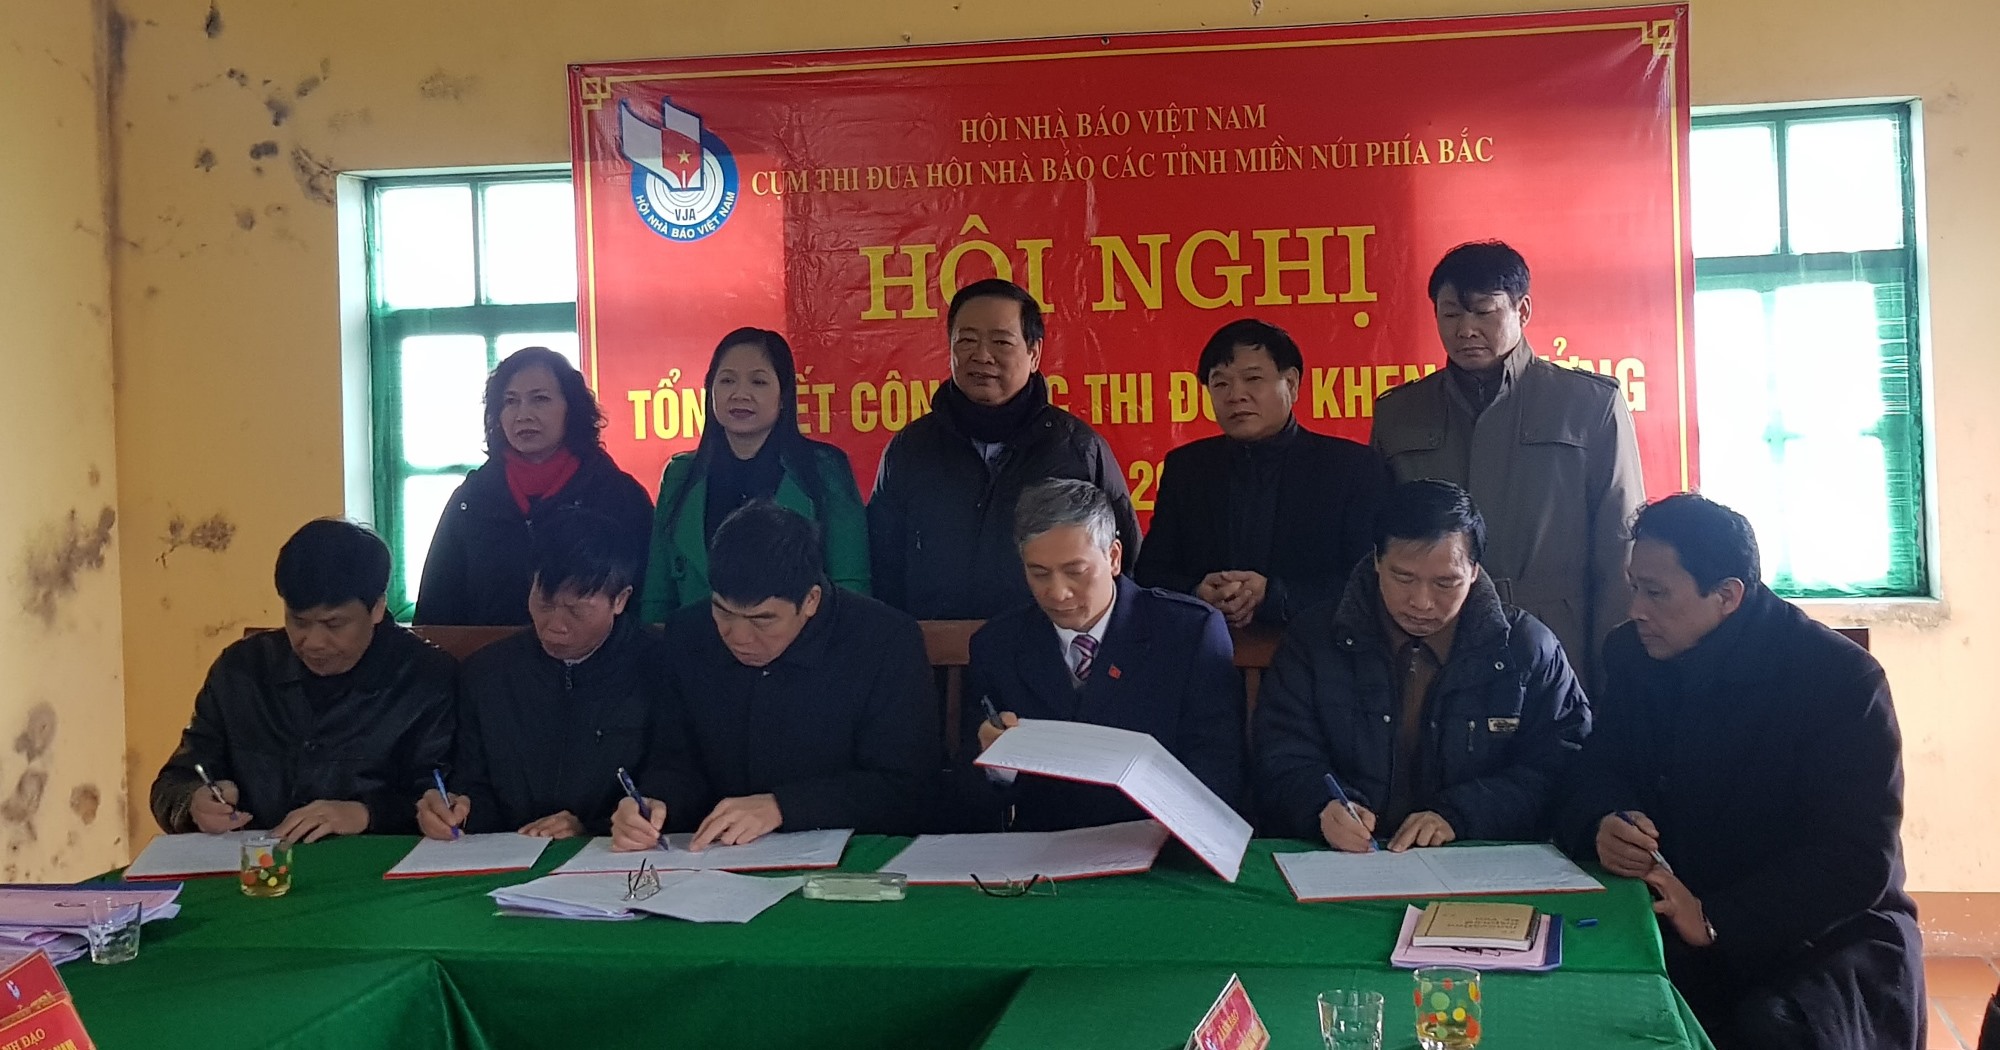 Lãnh đạo Hội Nhà báo 6 tỉnh thuộc Cụm thi đua các tỉnh miền núi phía Bắc đã ký kết bản giao ước thi đua năm 2018